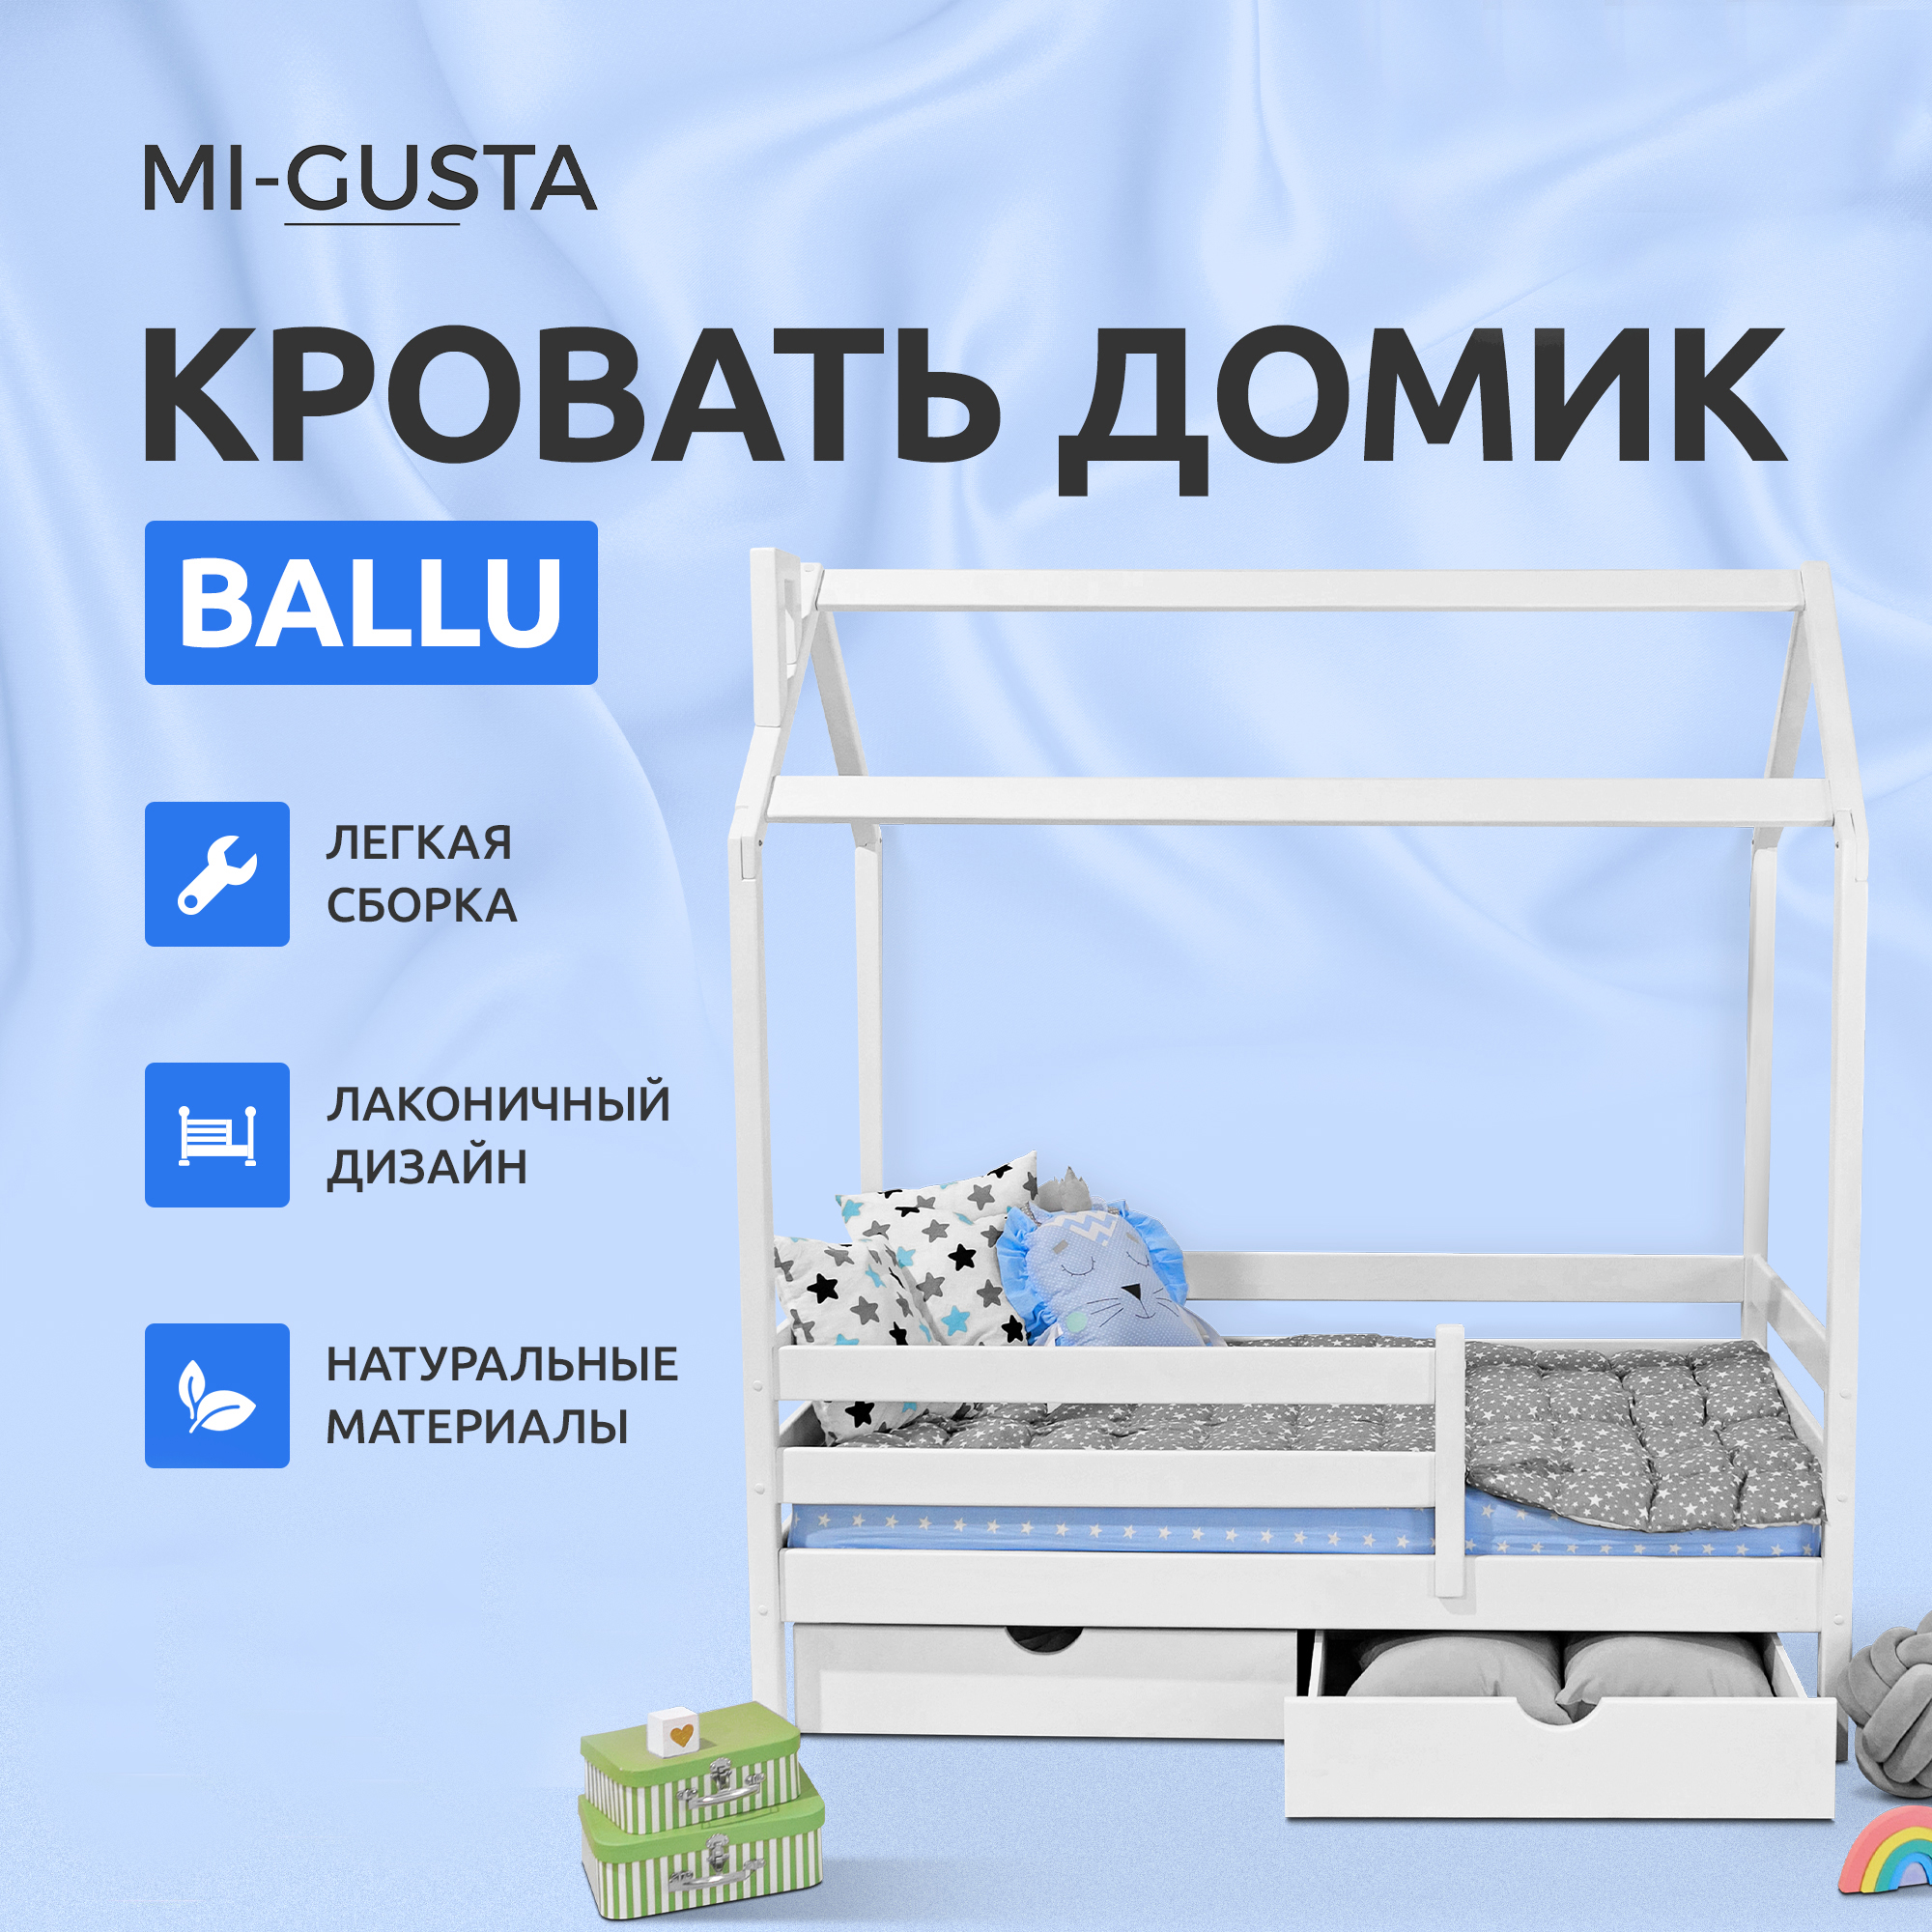 Кровать детская Mi-Gusta Ballu, 189х89х175, береза, кровать-домик, без ящиков обогреватель ballu bih t 1 5 e инфракрасный 1500 вт 15 м2 серый